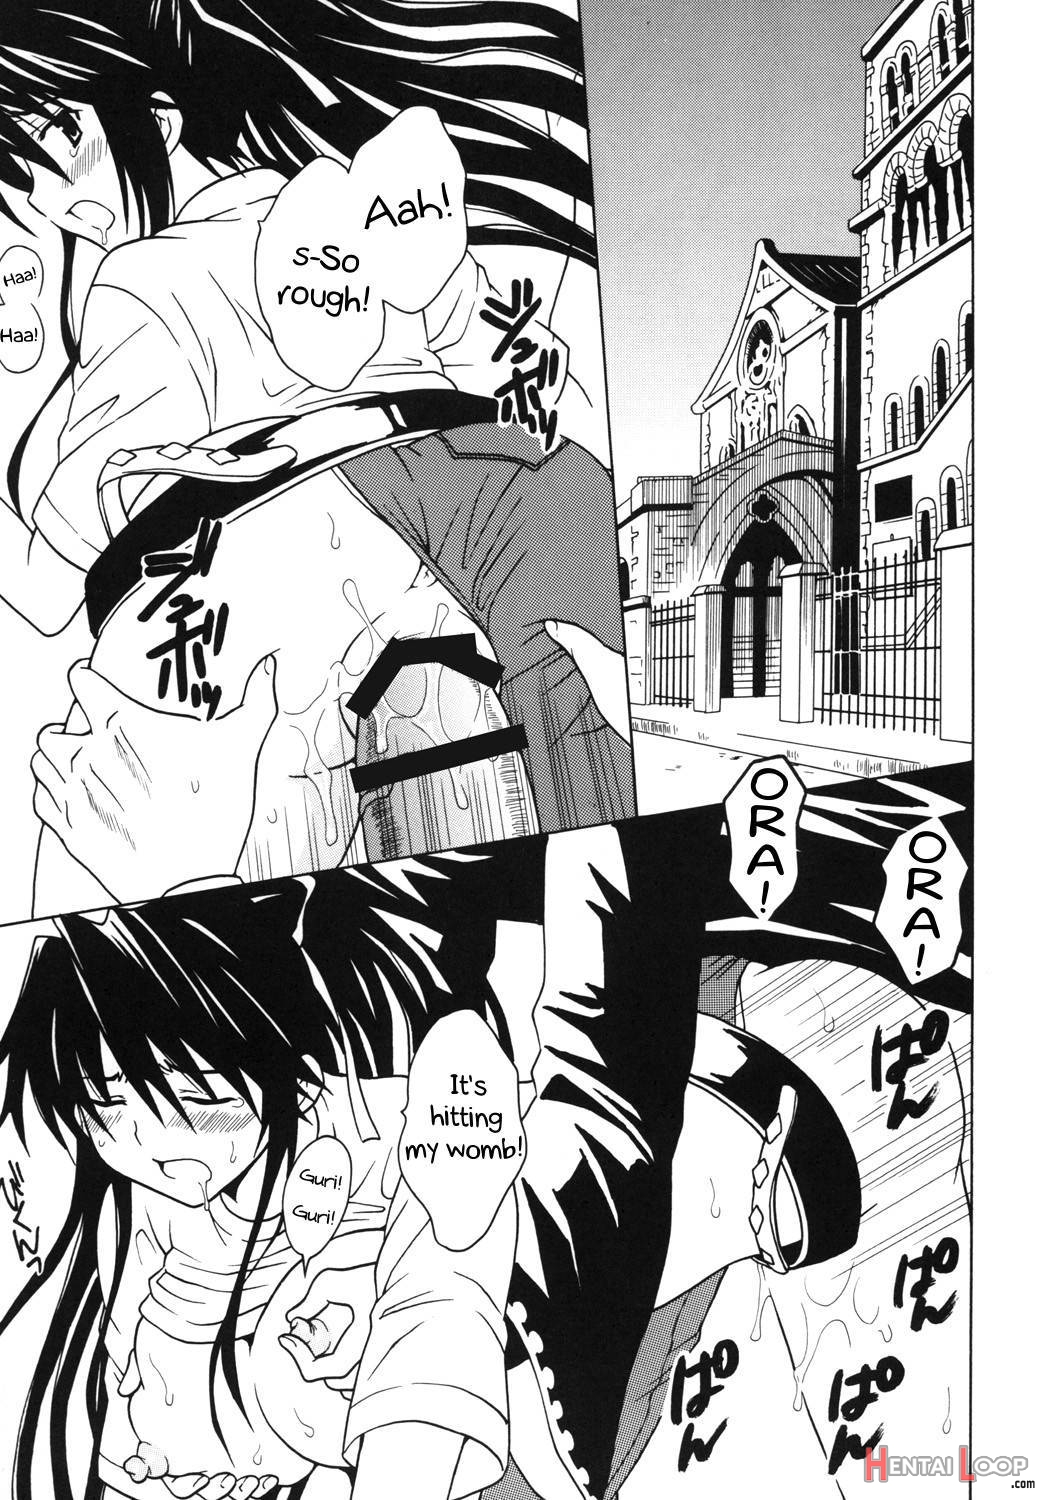 Toaru Otaku no Index #1 page 22